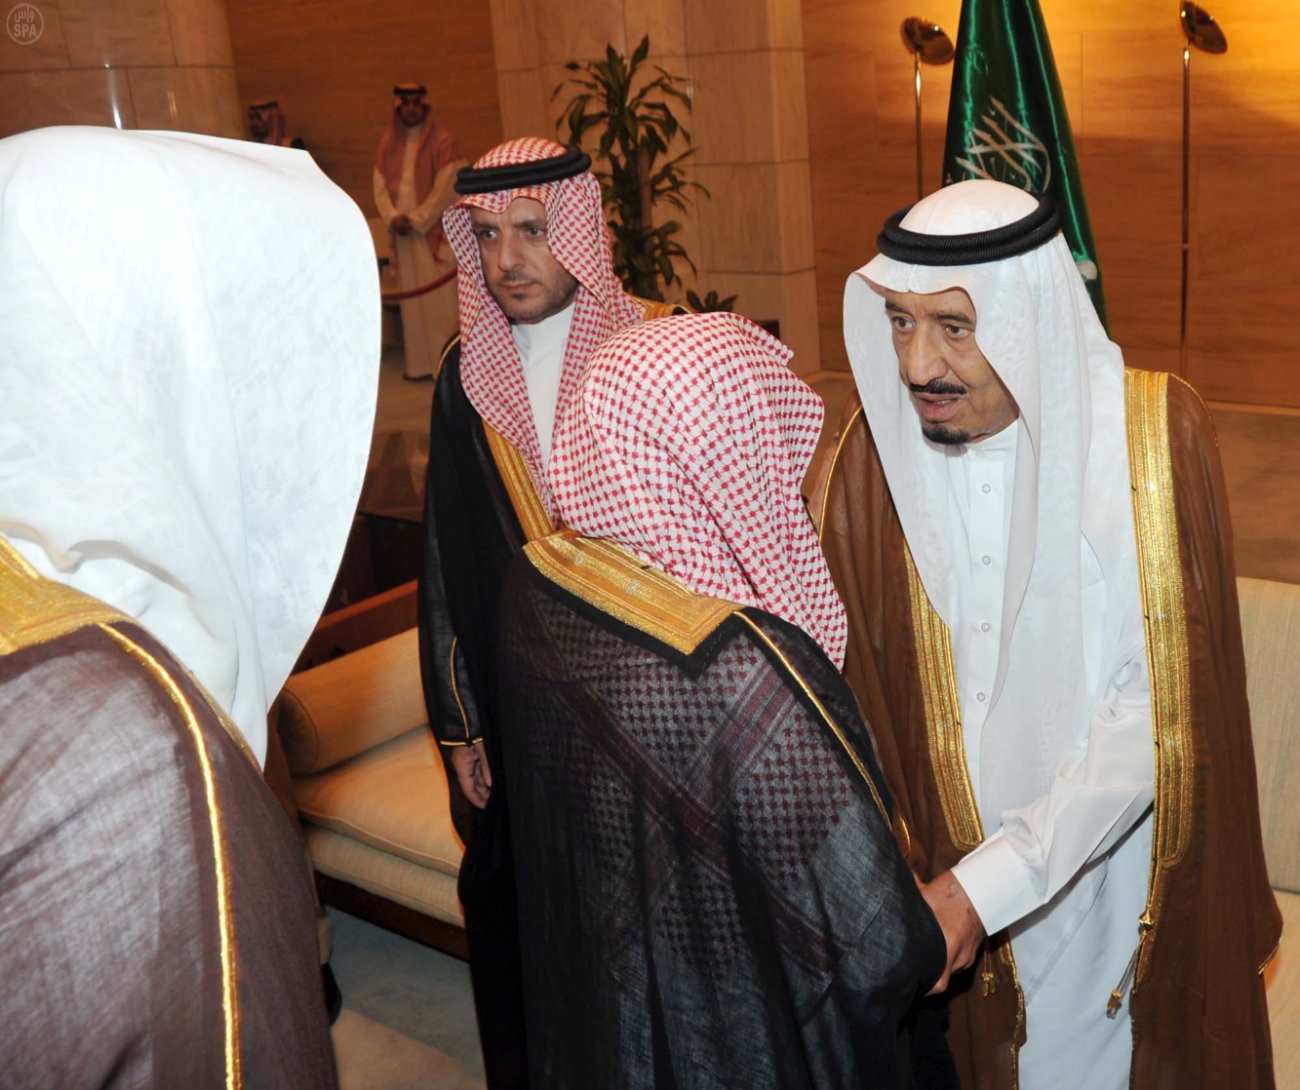 السيرة الذاتية لخادم الحرمين الشريفين الملك سلمان بن عبدالعزيز آل سعود